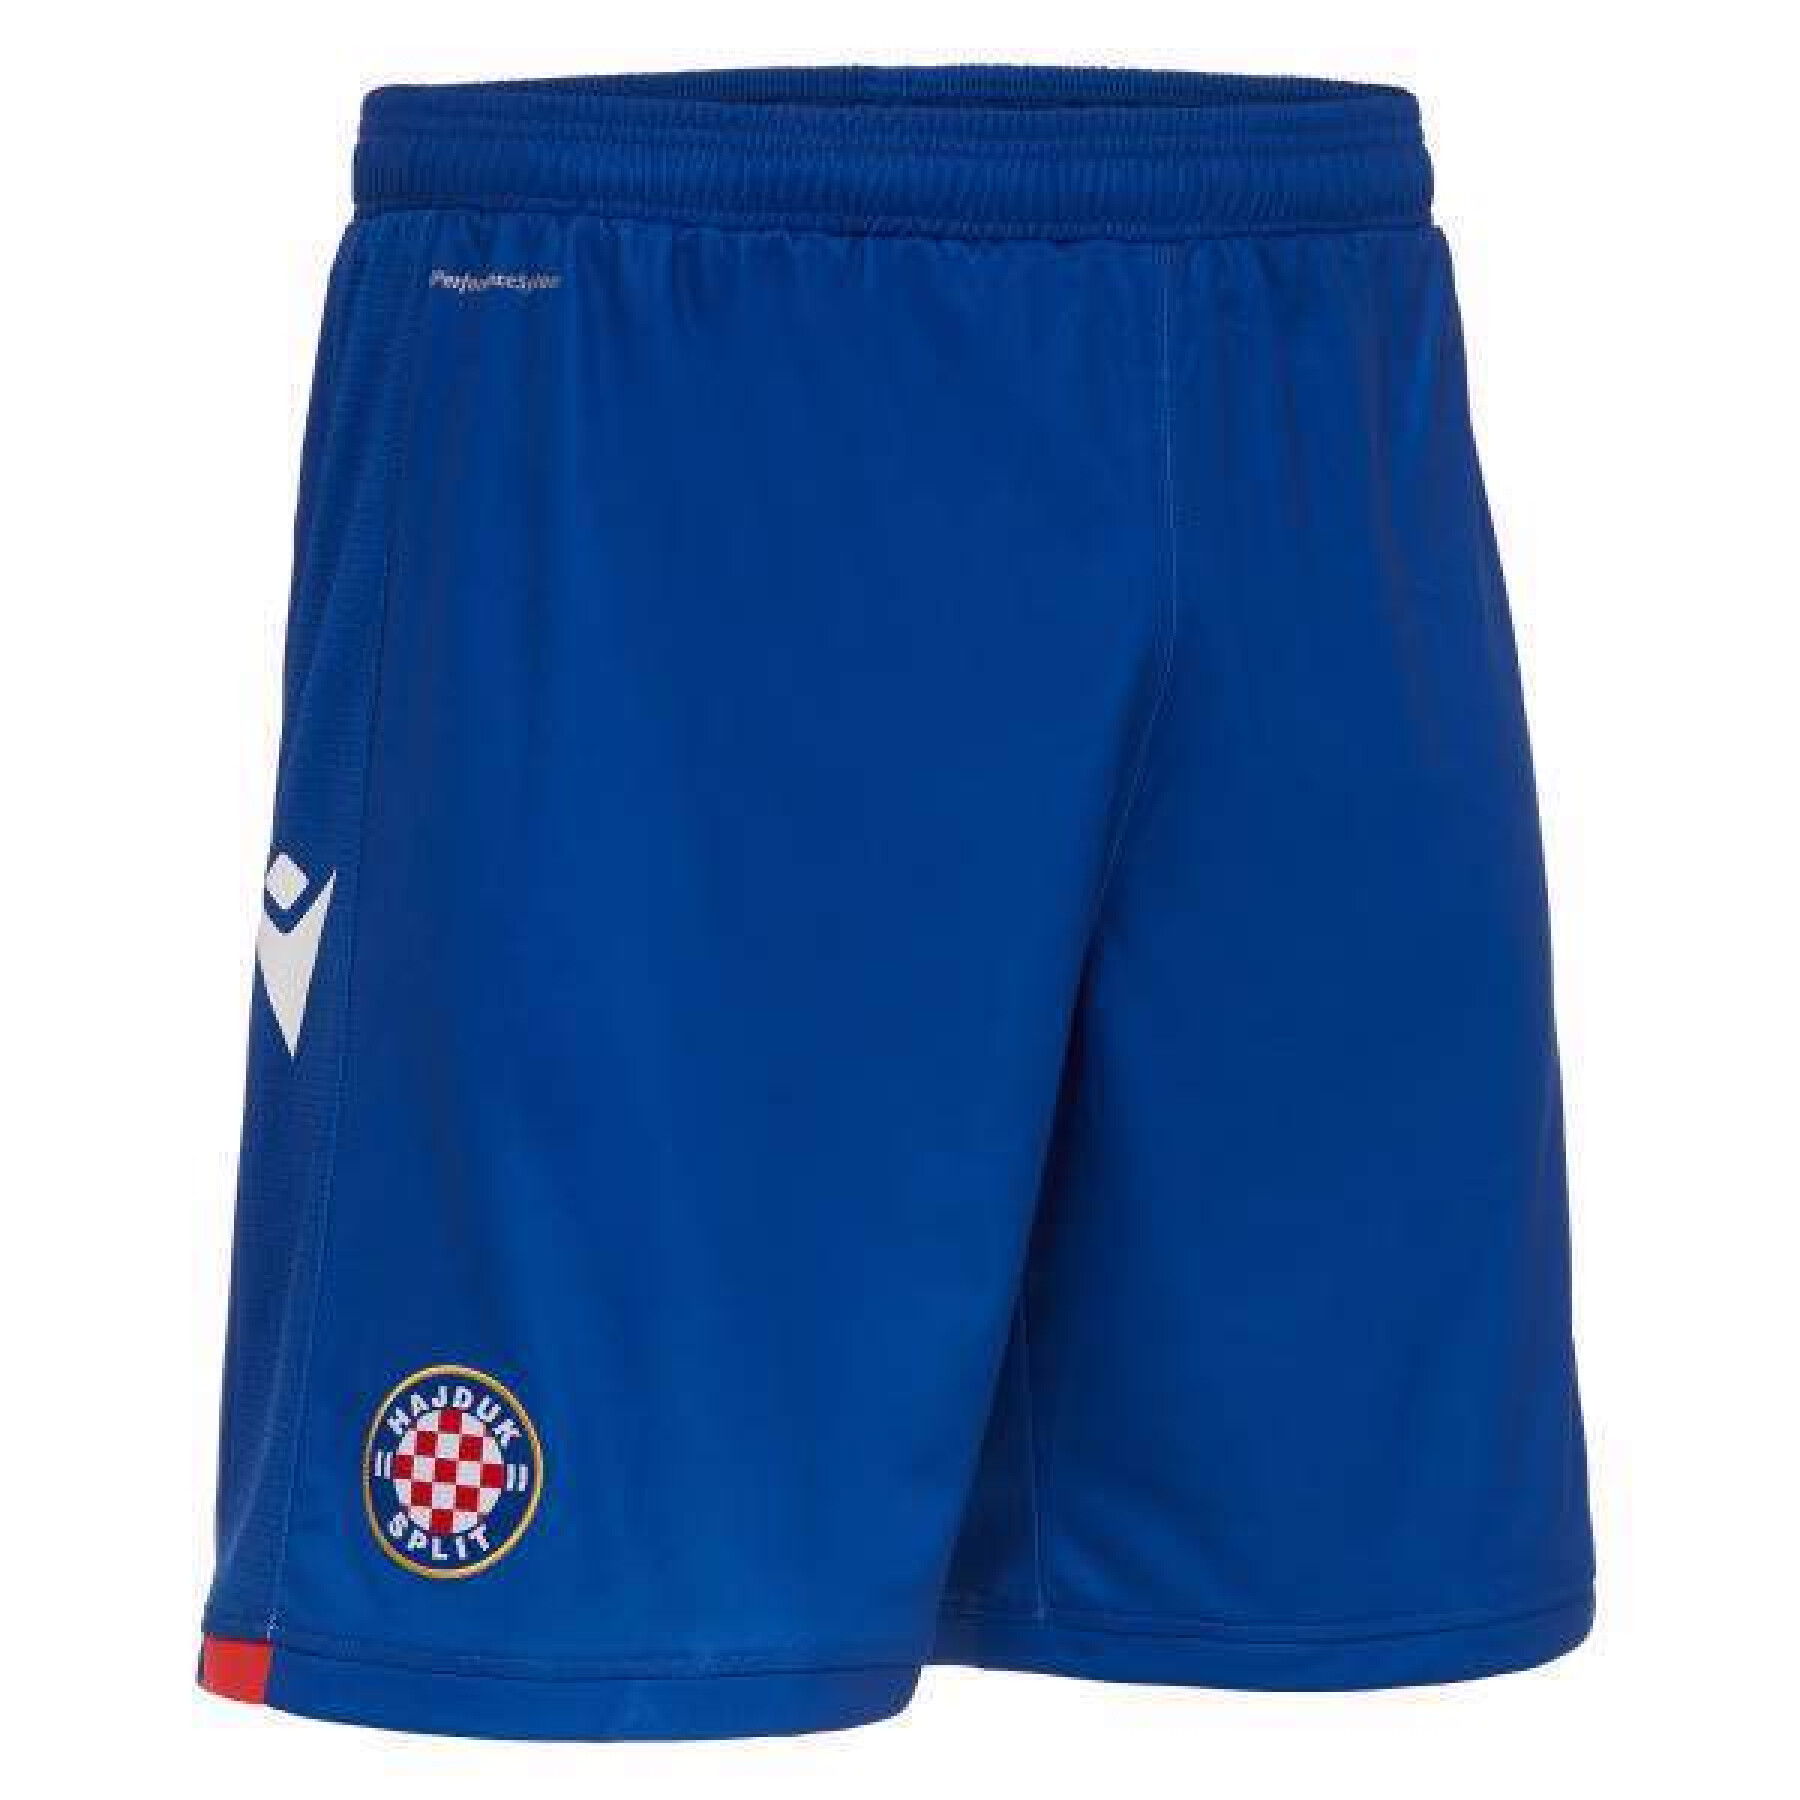 Outdoor kindershorts Hajduk Split 2020/21